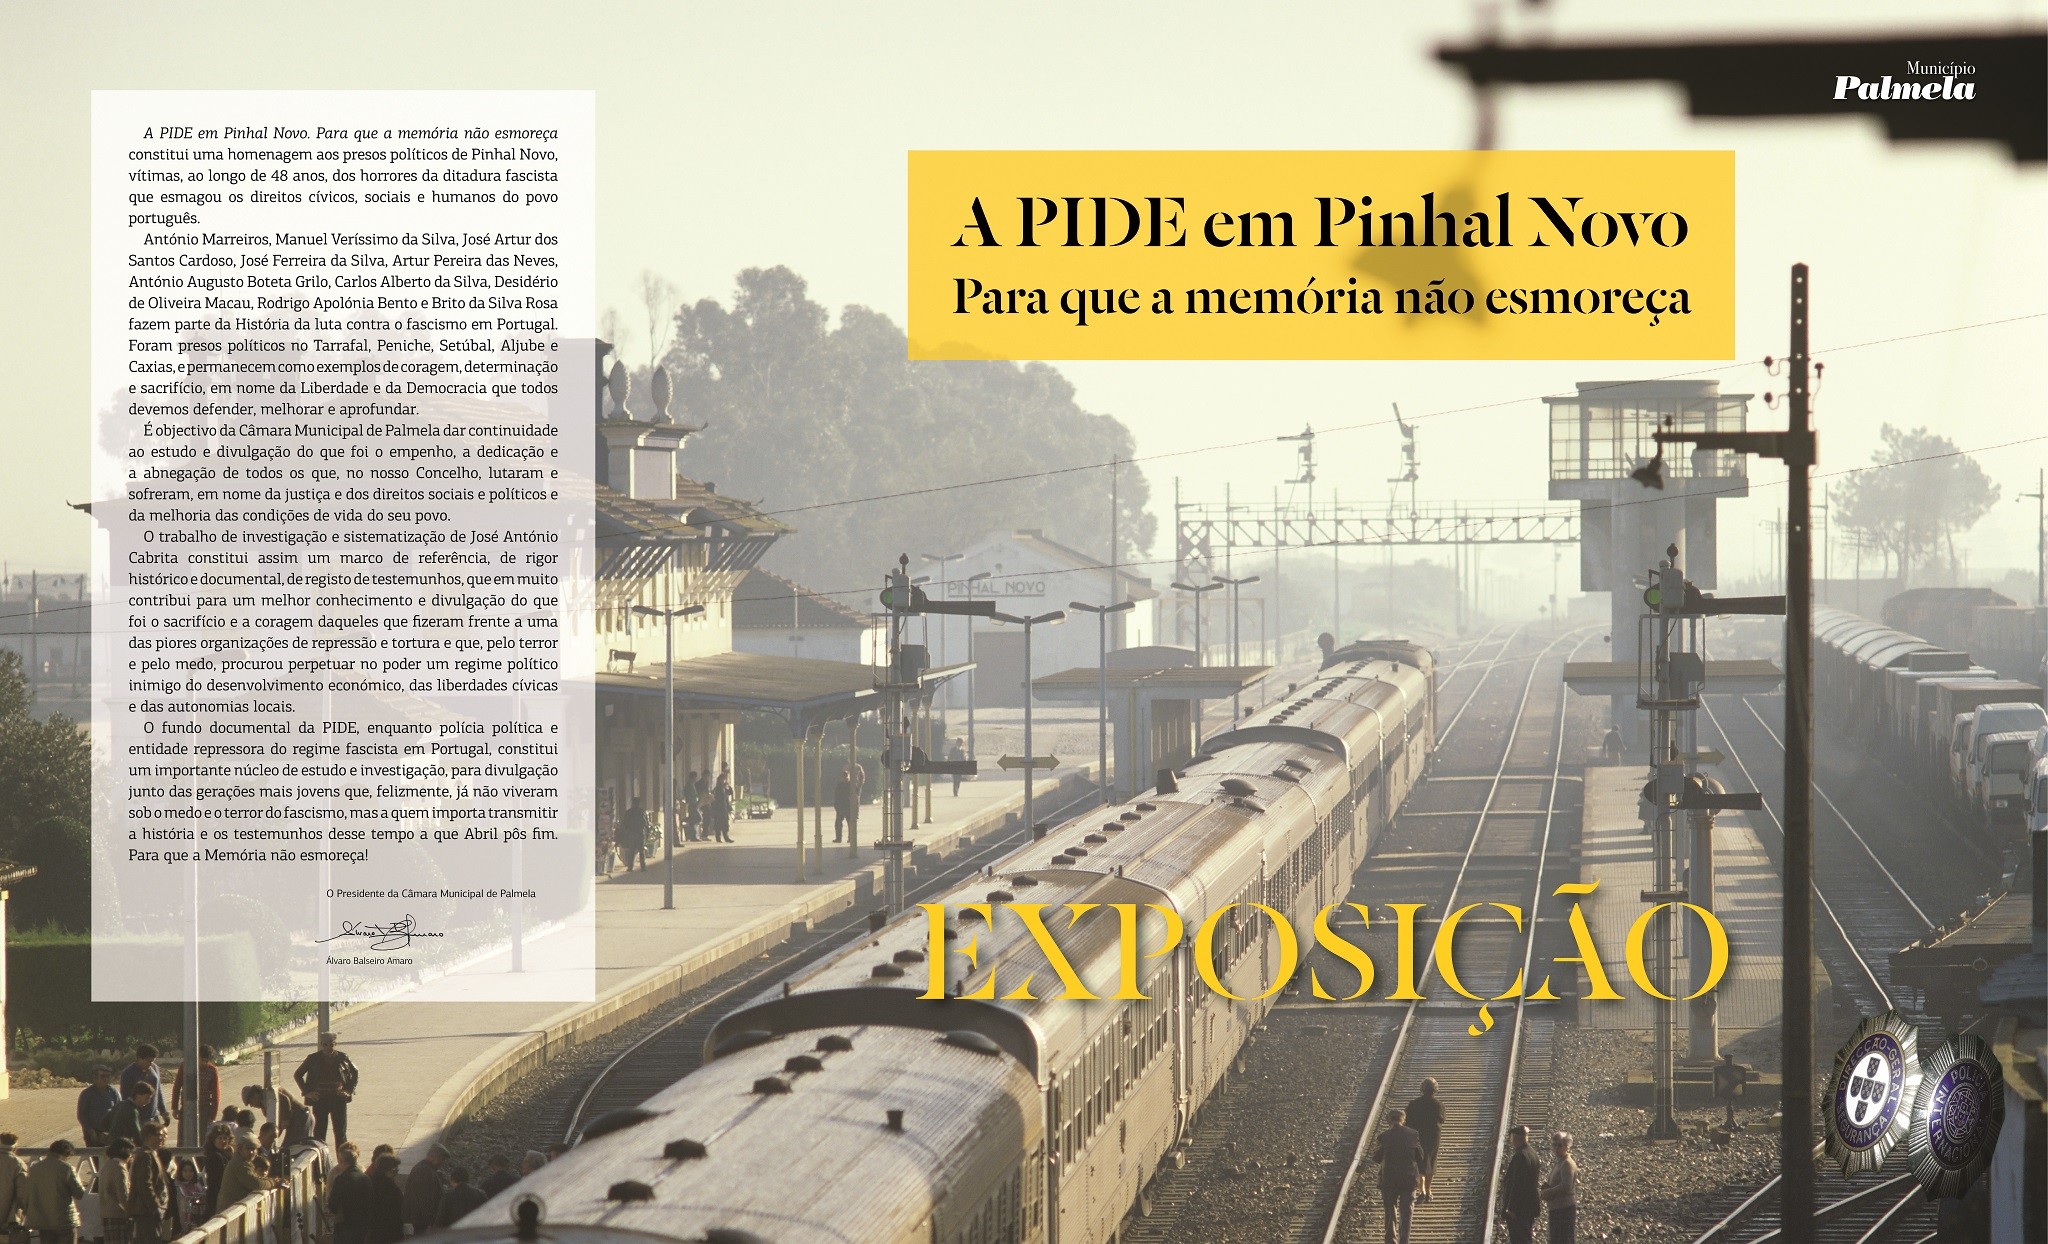 Exposição "A PIDE em Pinhal Novo"